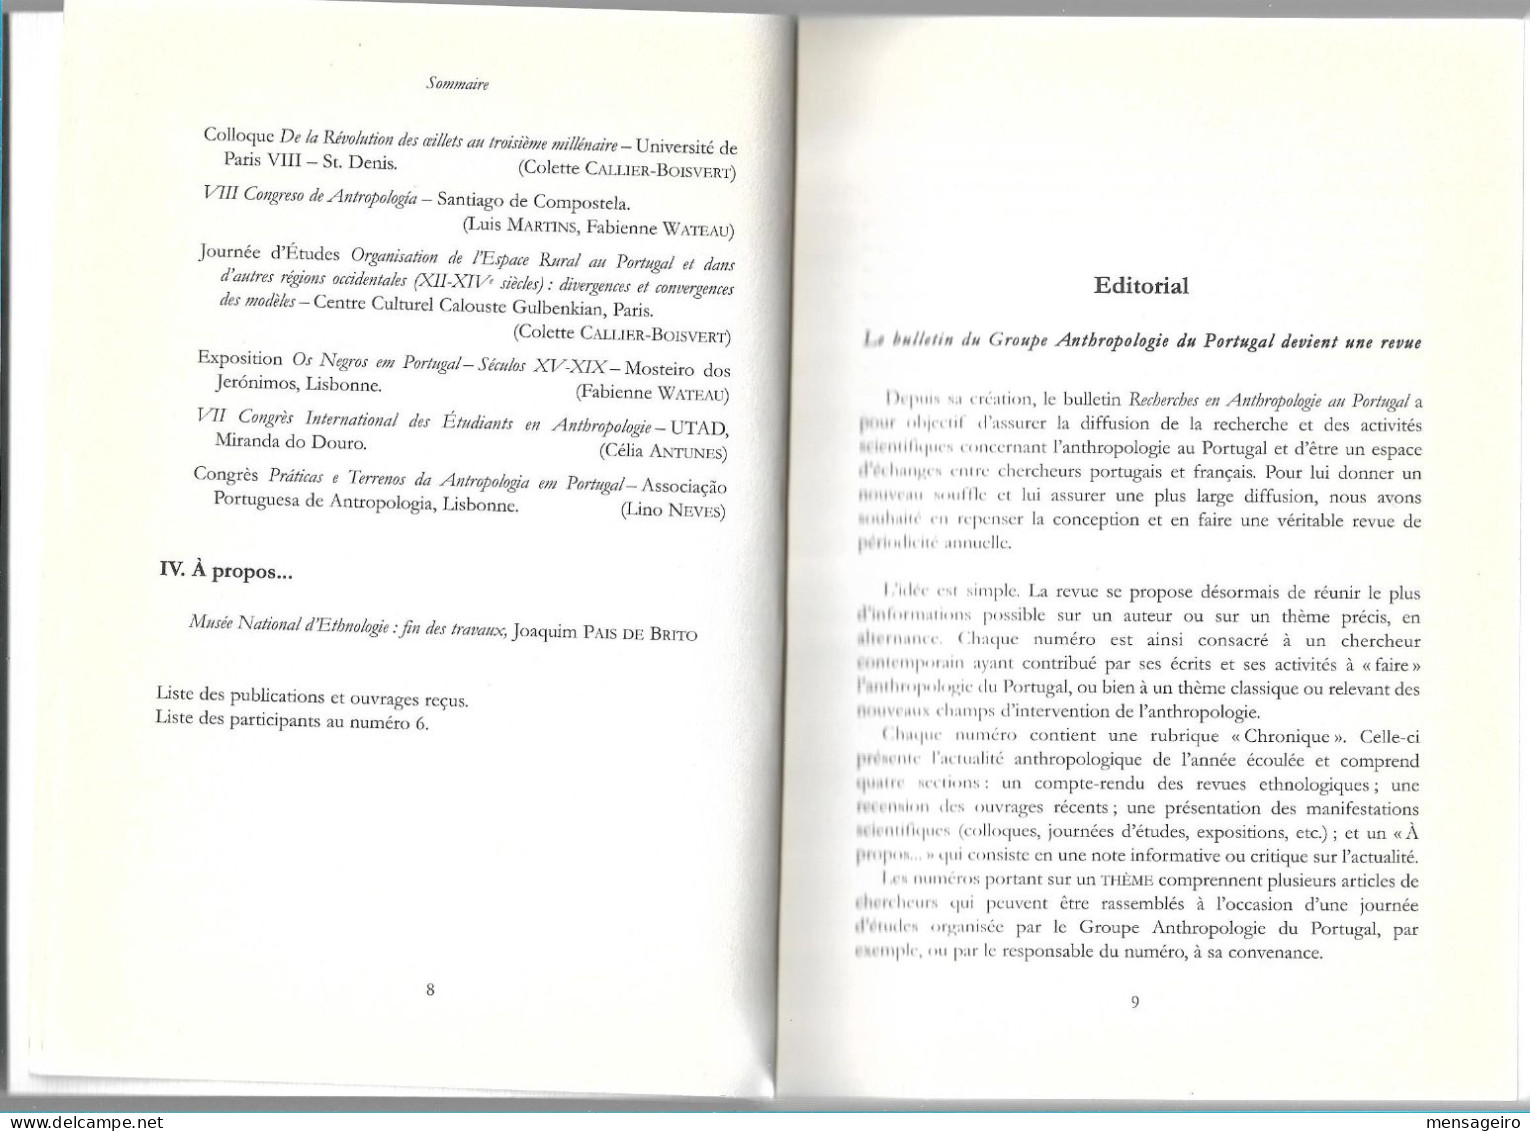 (LIV) – RECHERCHES EN ANTHROPOLOGIE AU PORTUGAL N°6 -2000 - Sociologia